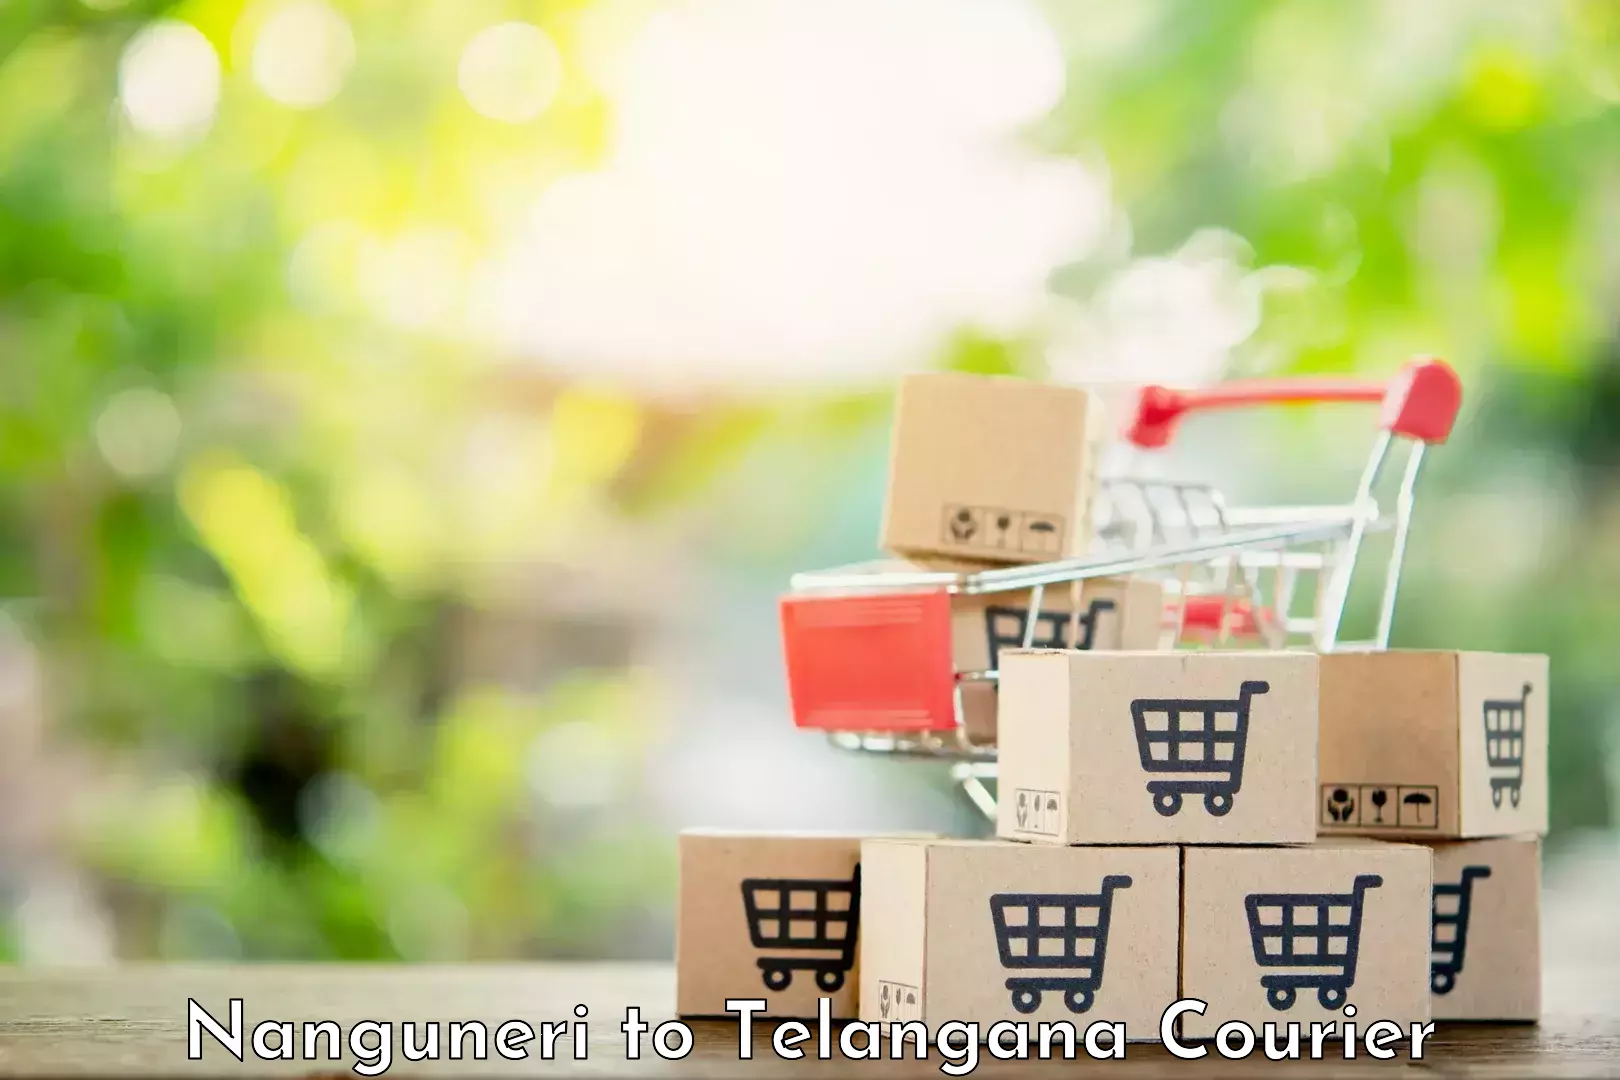 Premium courier services Nanguneri to Achampet